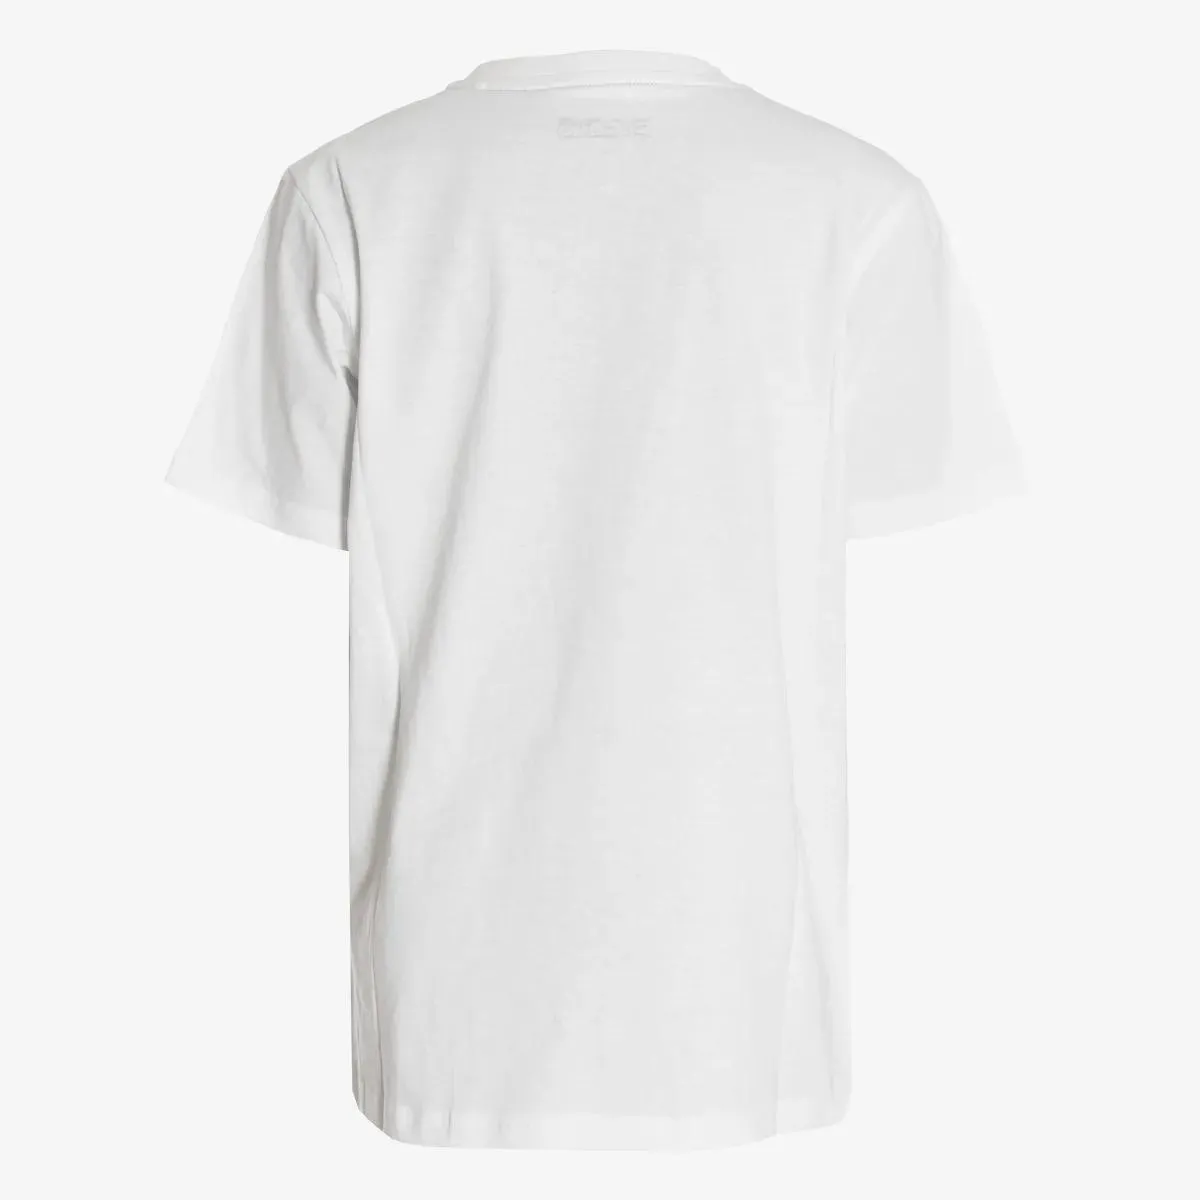 Cocomo T-shirt PER T-SHIRT 